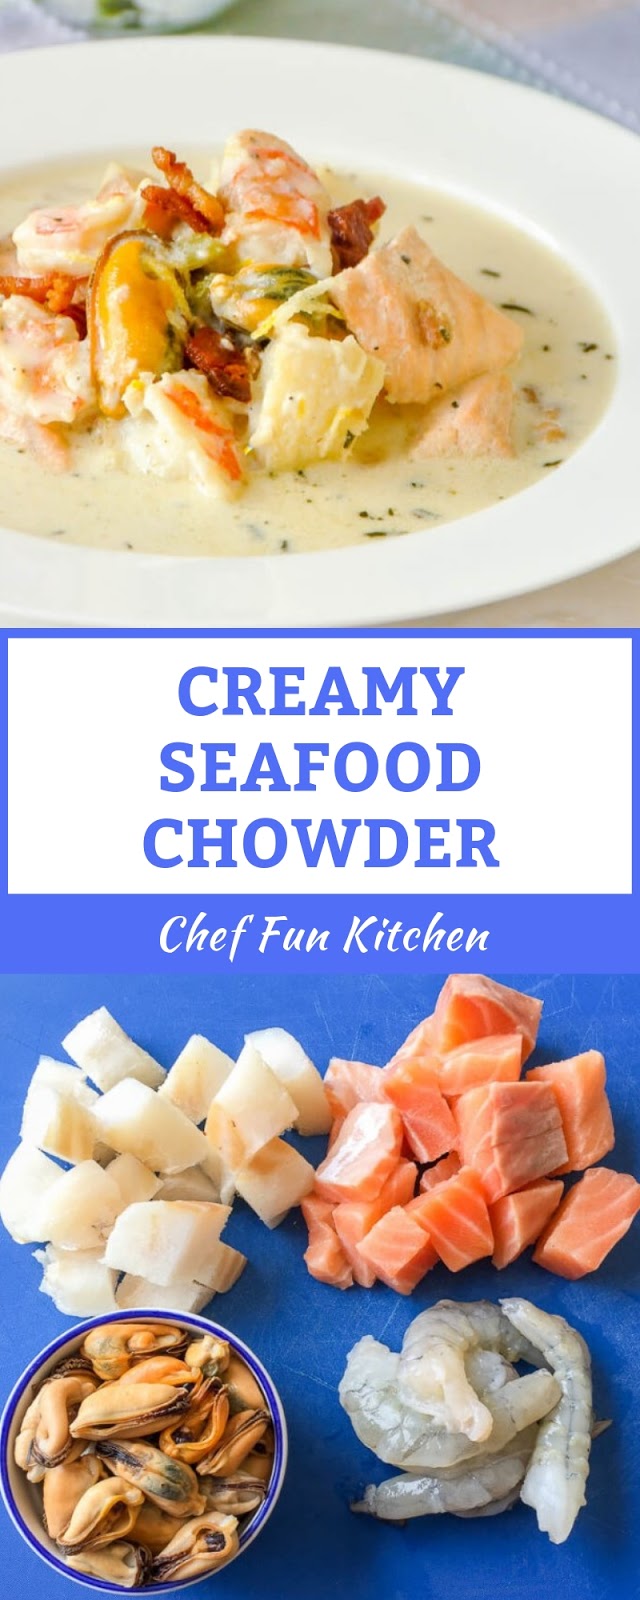 CREAMY SEAFOOD CHOWDER